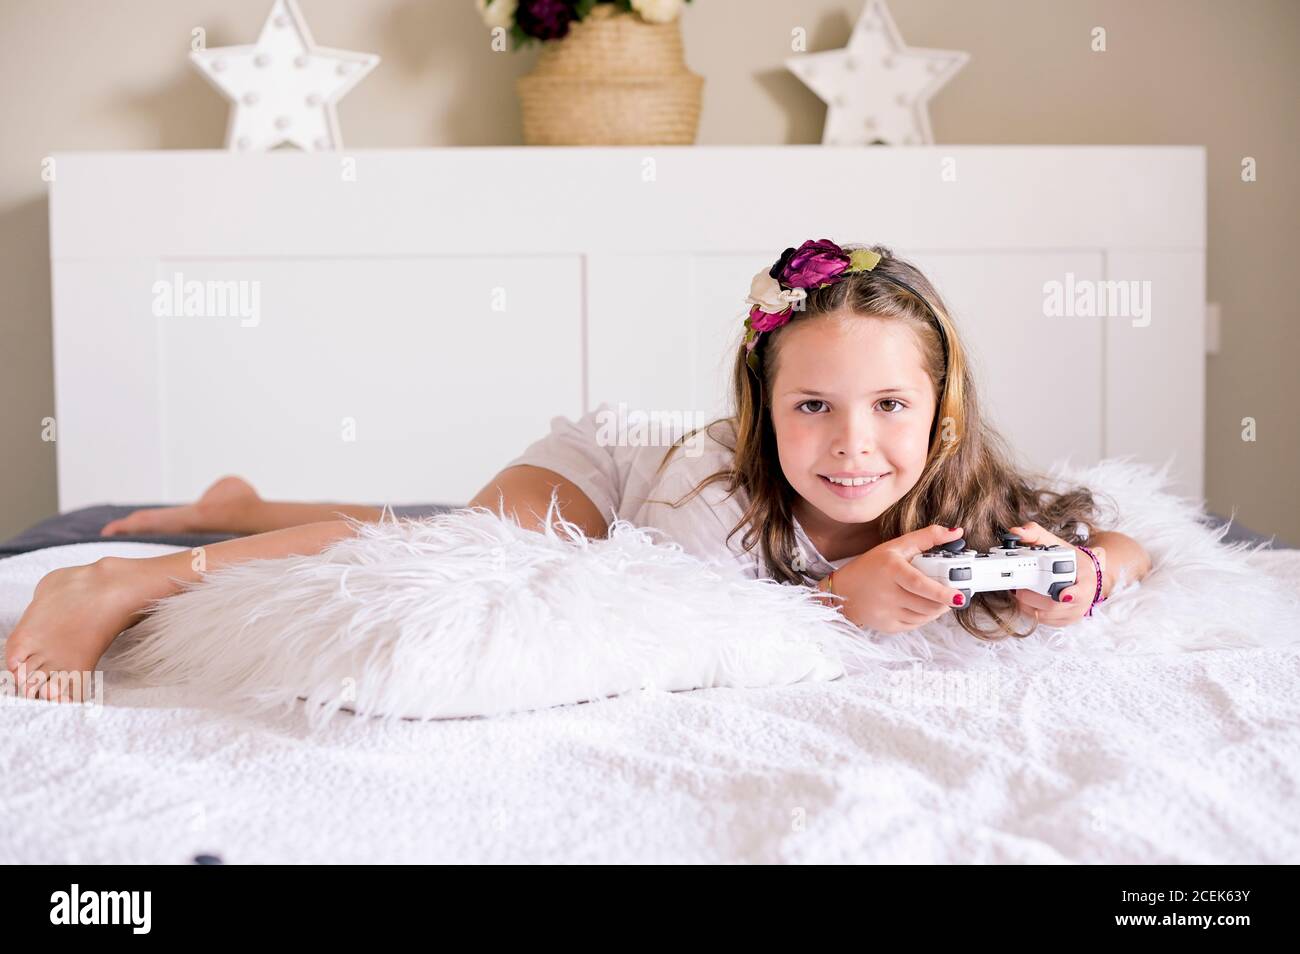 Una bambina sta giocando una console per computer su un divano in una stanza luminosa. Giochi simultanei per bambini. Joystick per il controllo manuale. Emozioni e divertimento del bambino. Spazio di copia. Alta qualità. Messa a fuoco morbida Foto Stock